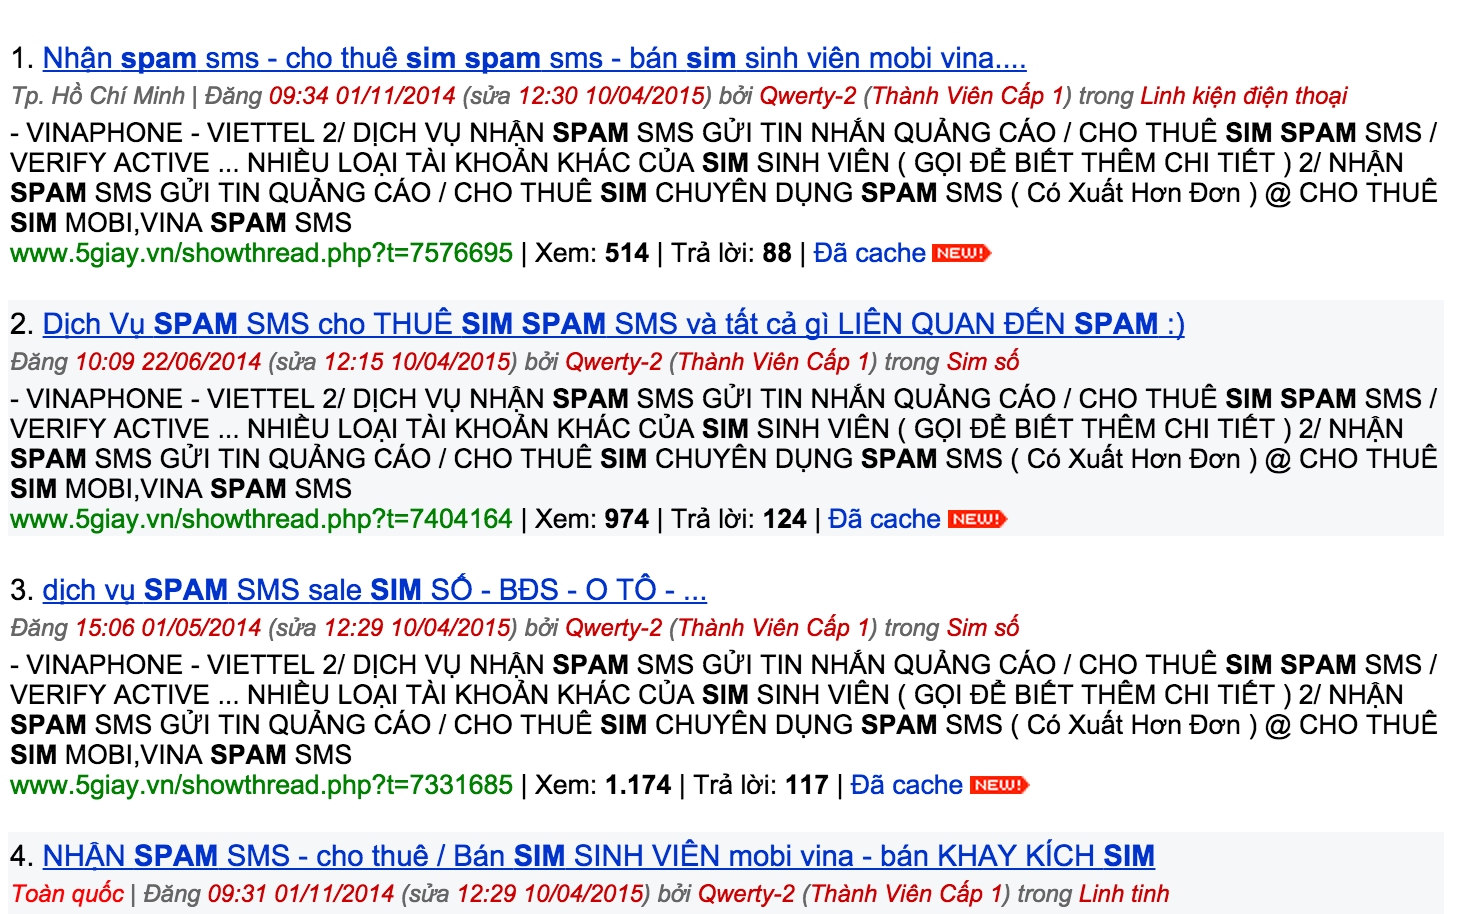 Cho thuê SIM spam nhan nhản trên mạng